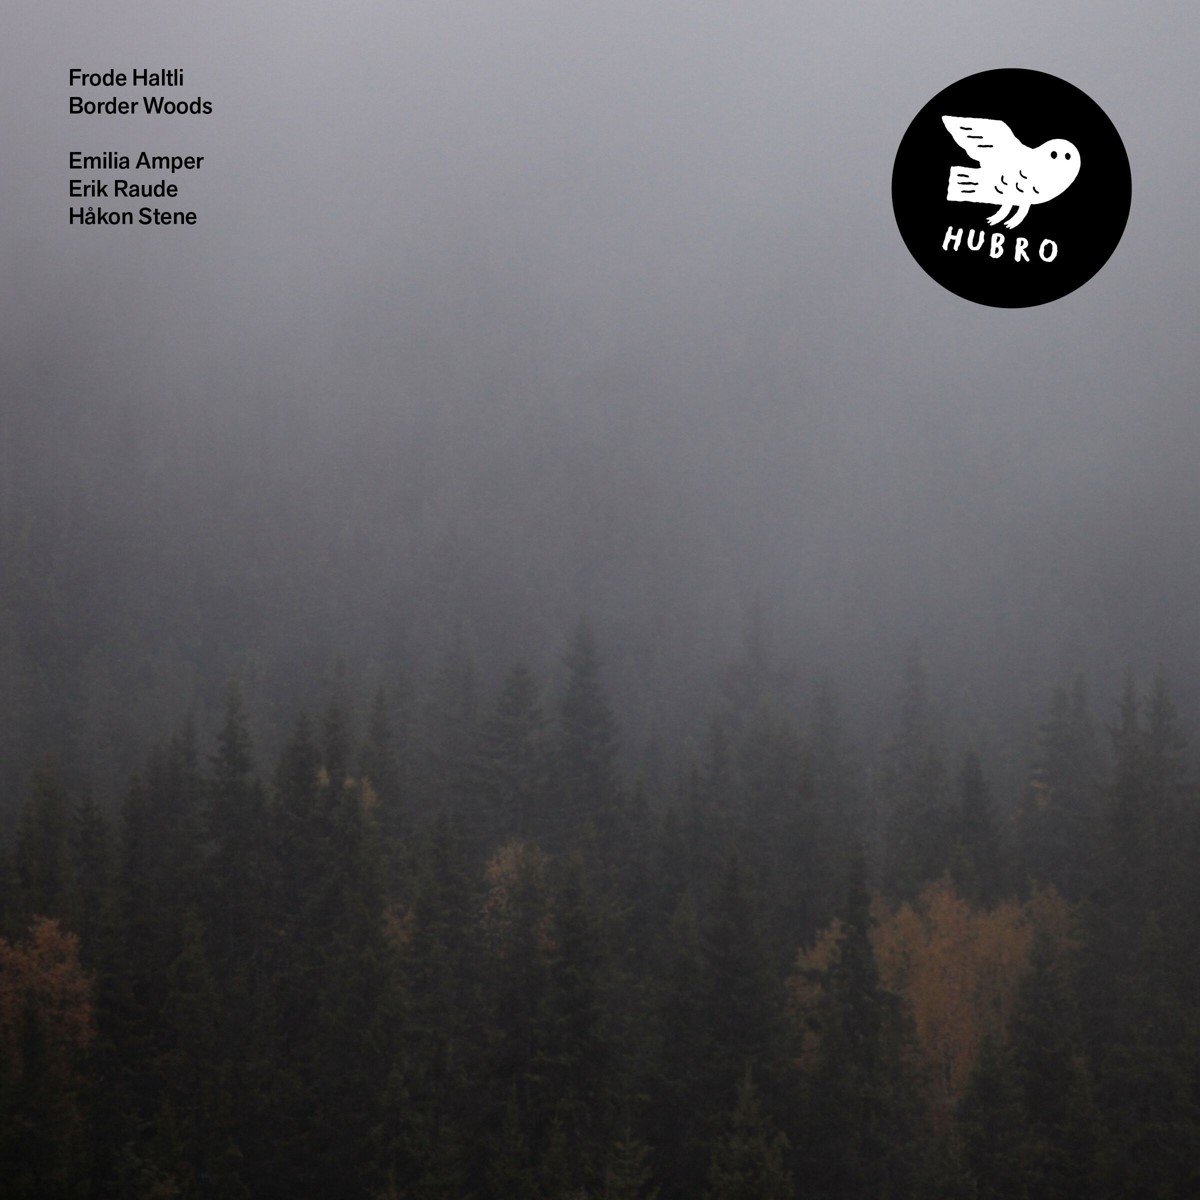 Frode Haltli - The Border Woods (LP) - Frode Haltli